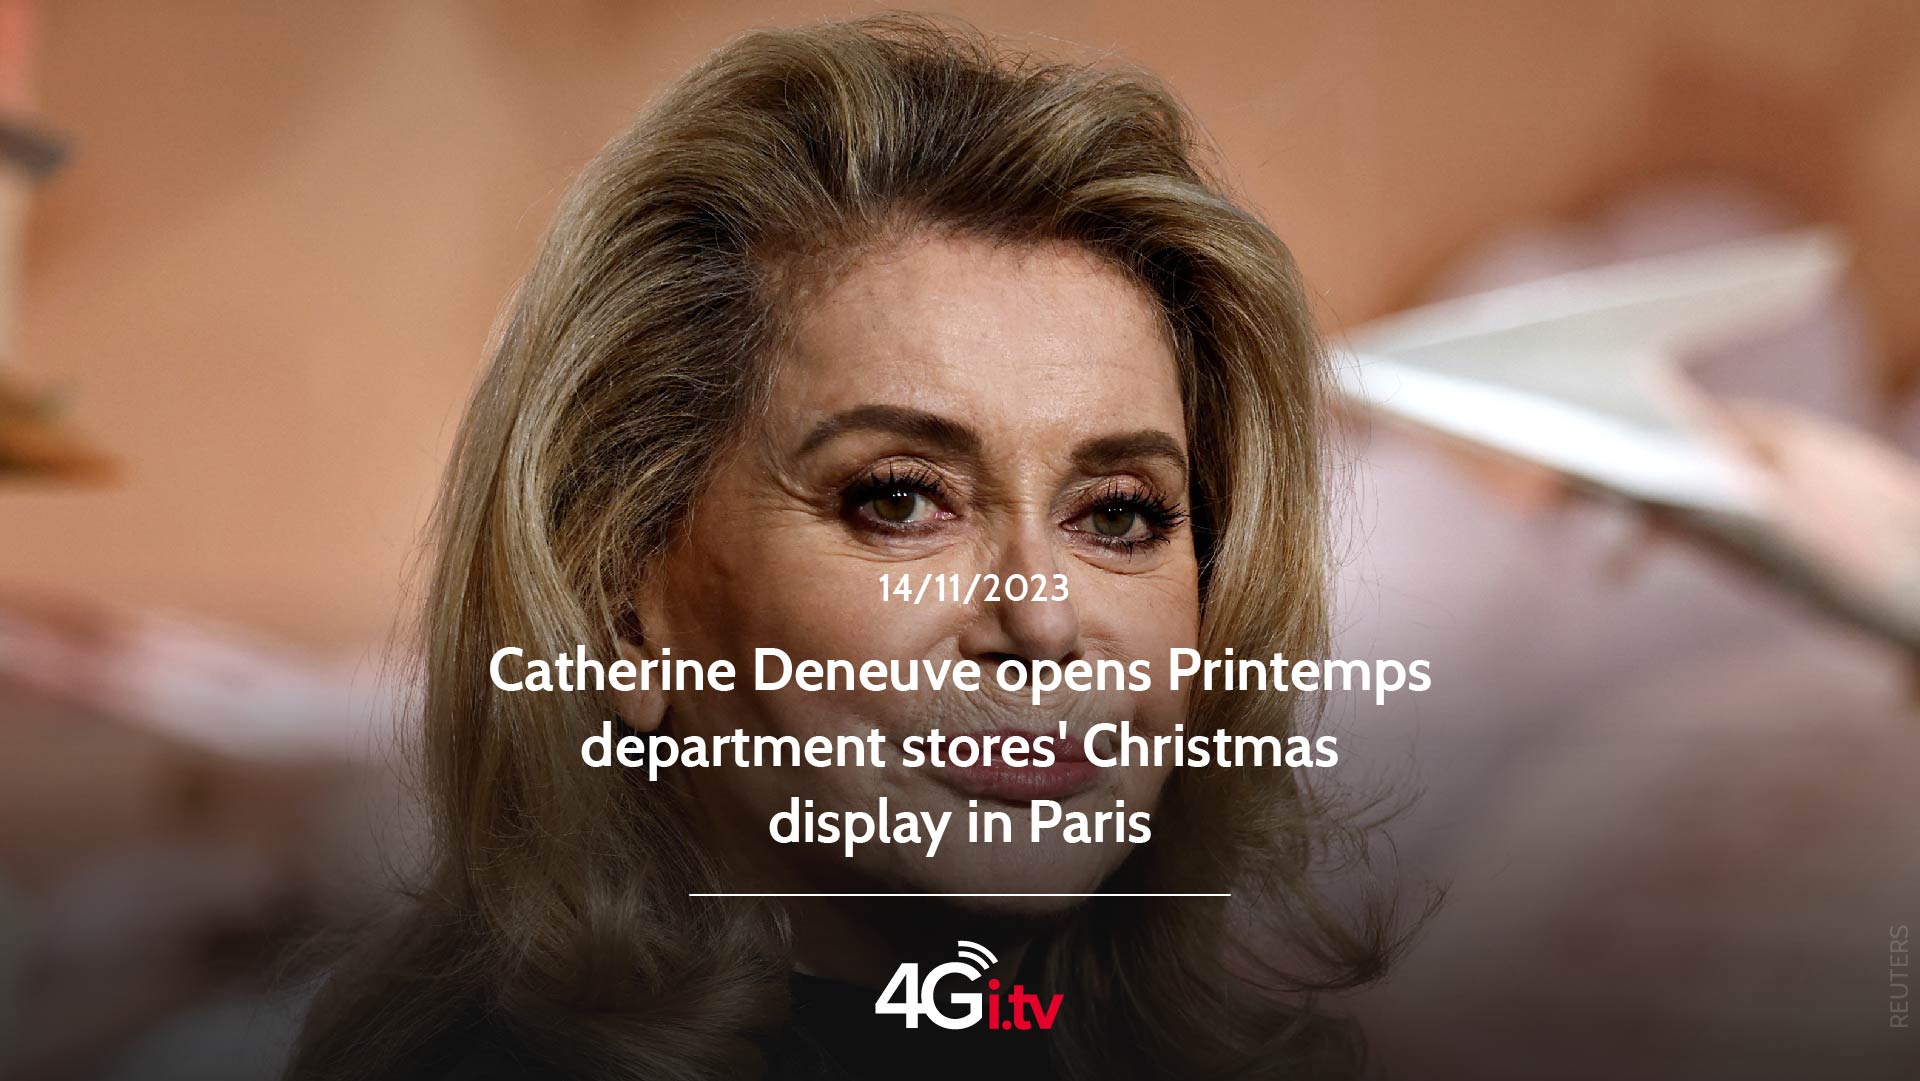 Lesen Sie mehr über den Artikel Catherine Deneuve opens Printemps department stores’ Christmas display in Paris